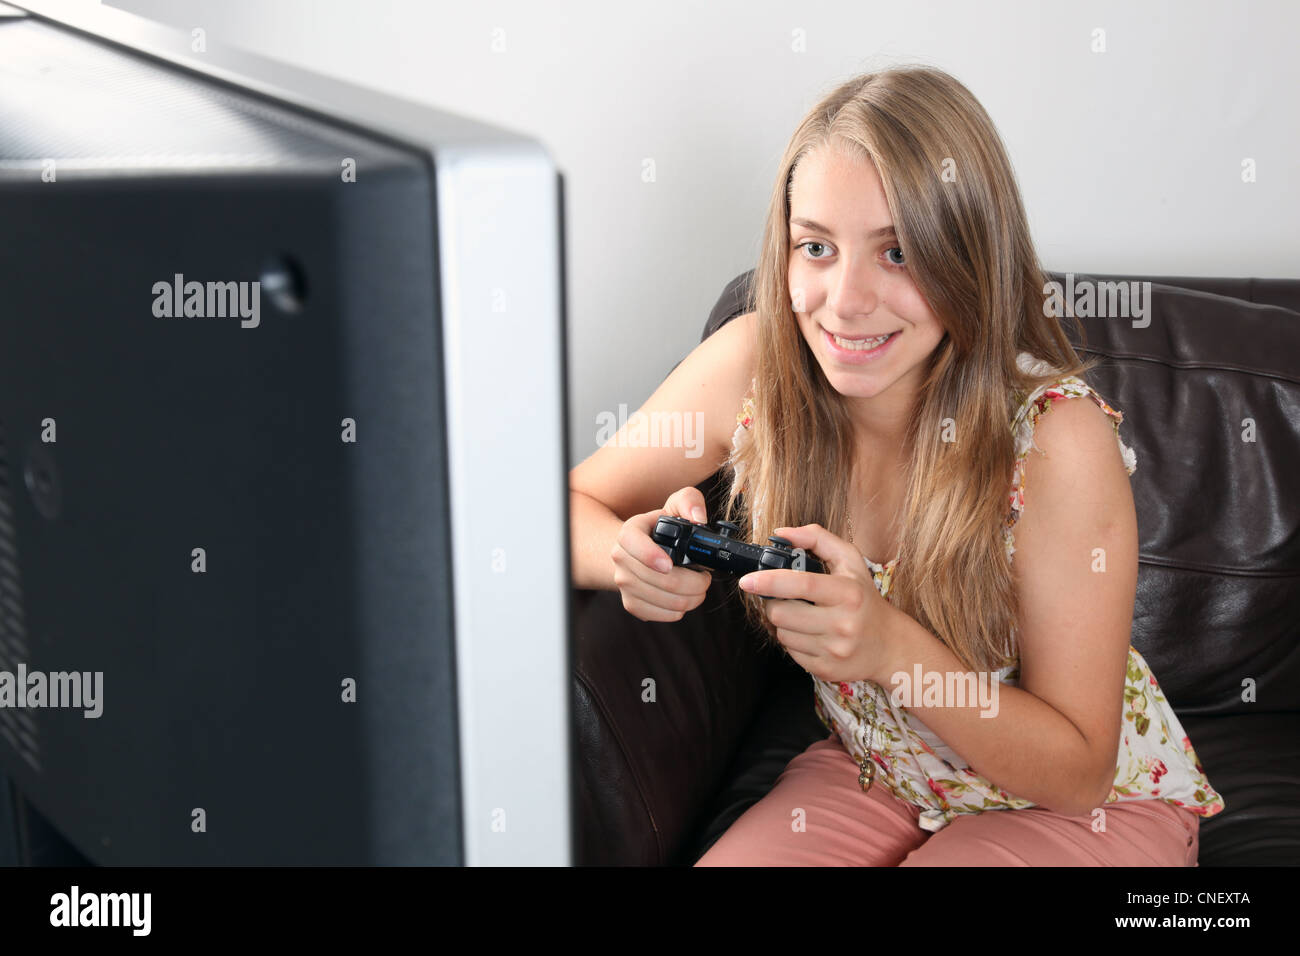 Jeune femme blonde tenant un contrôleur, tout en souriant (jeux playstation / x-box) jeu tv. Banque D'Images